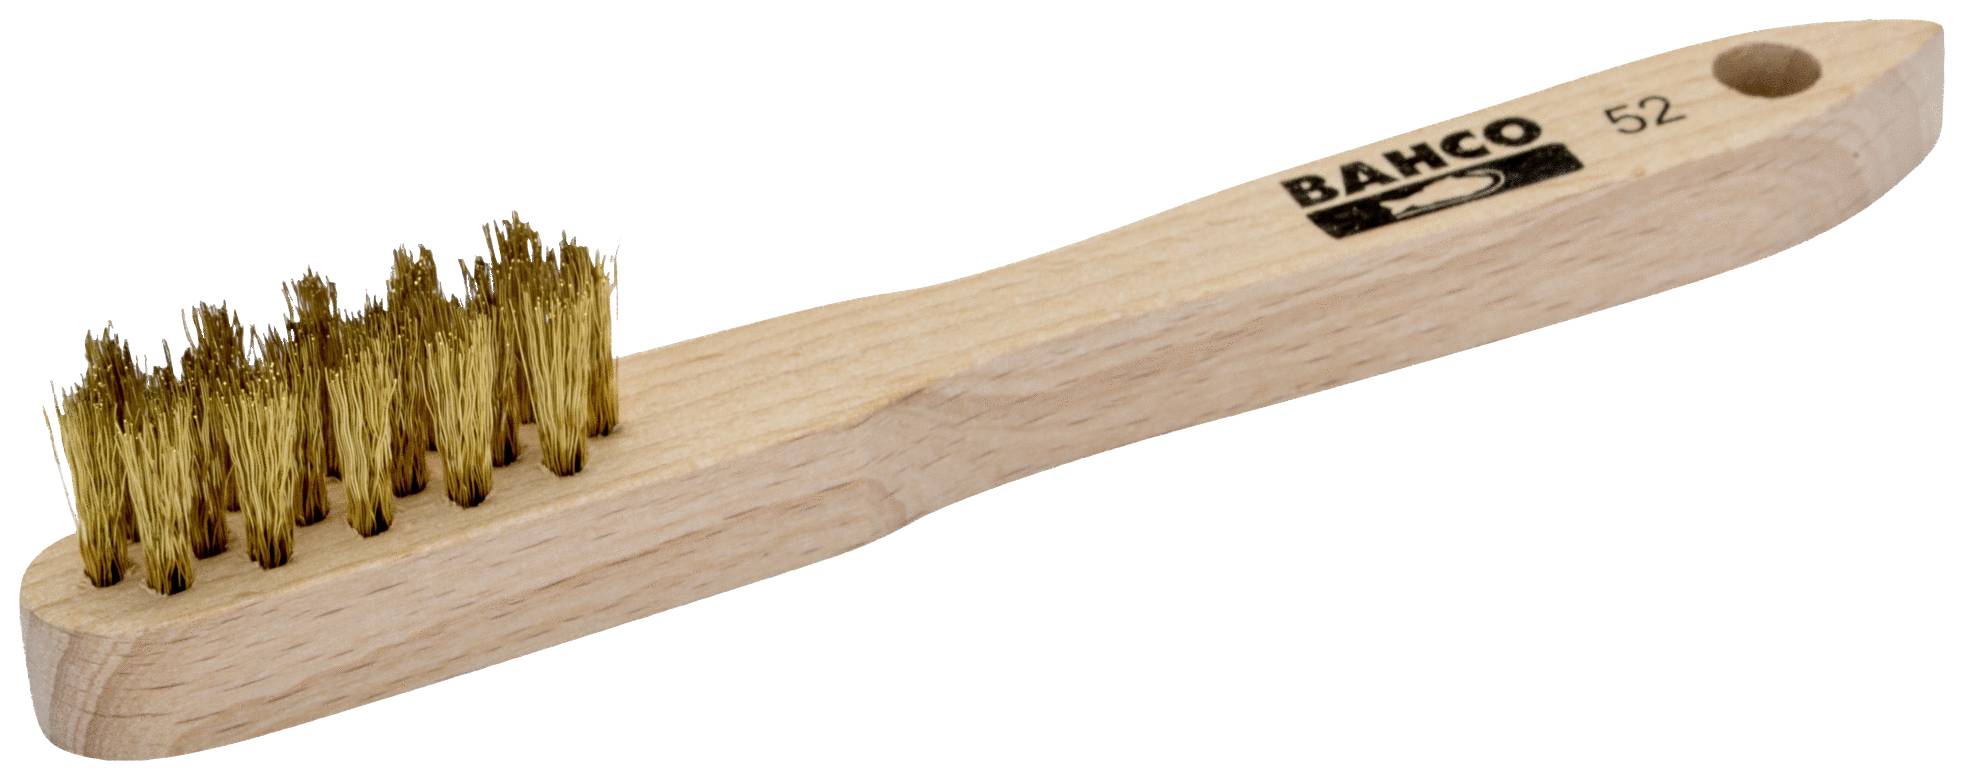 BAHCO 52 Zündkerzenbürste Holz 150 mm 1 Stück (52)